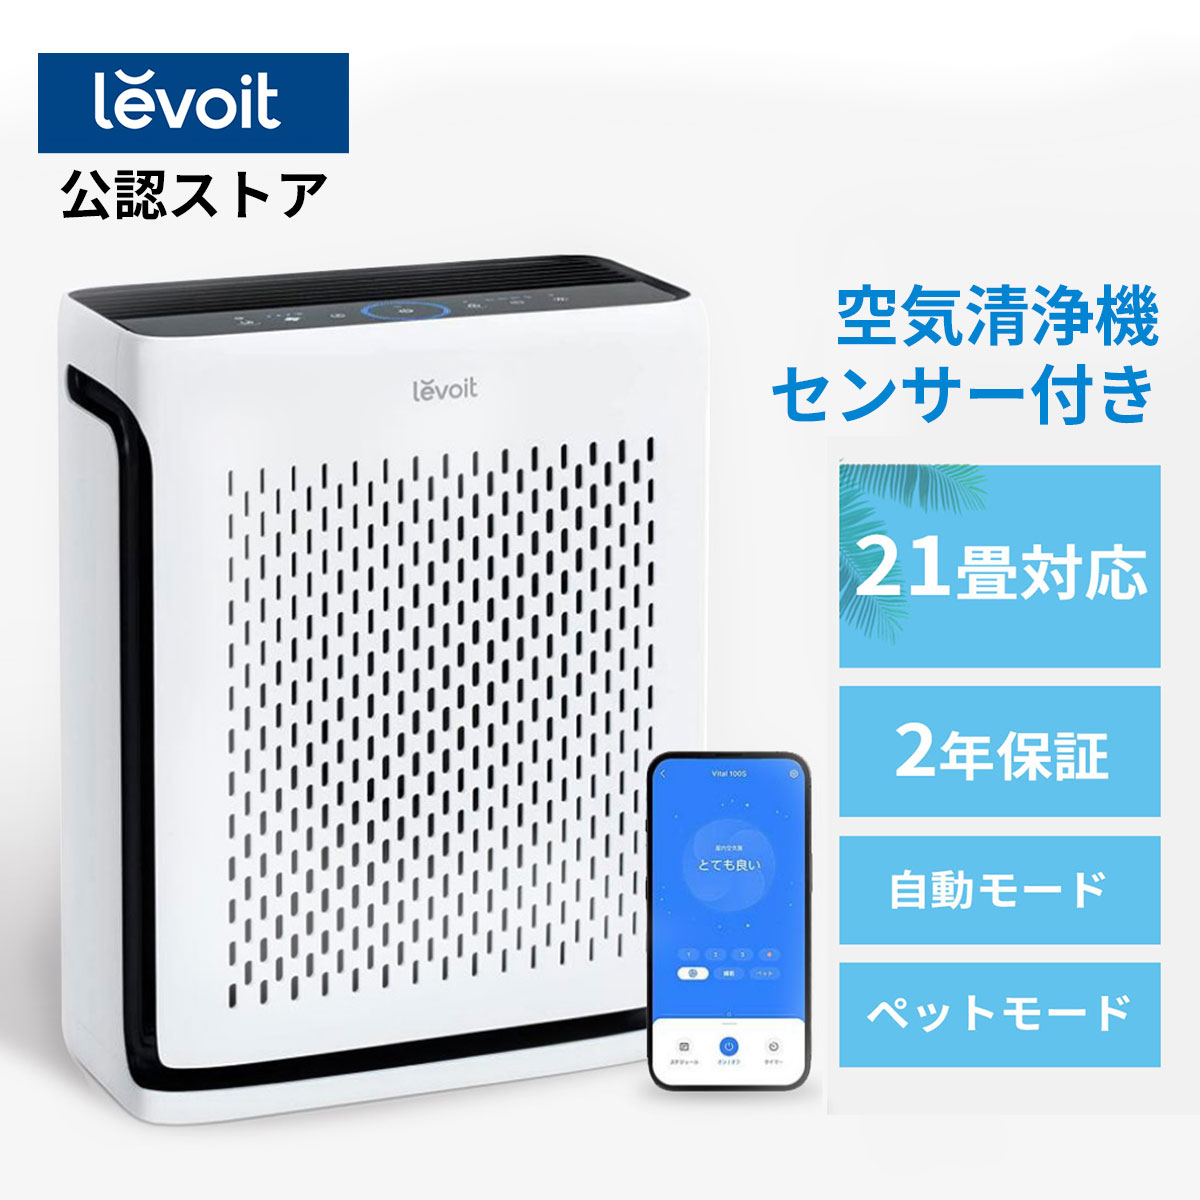 【得々クーポン】Levoit空気清浄機【